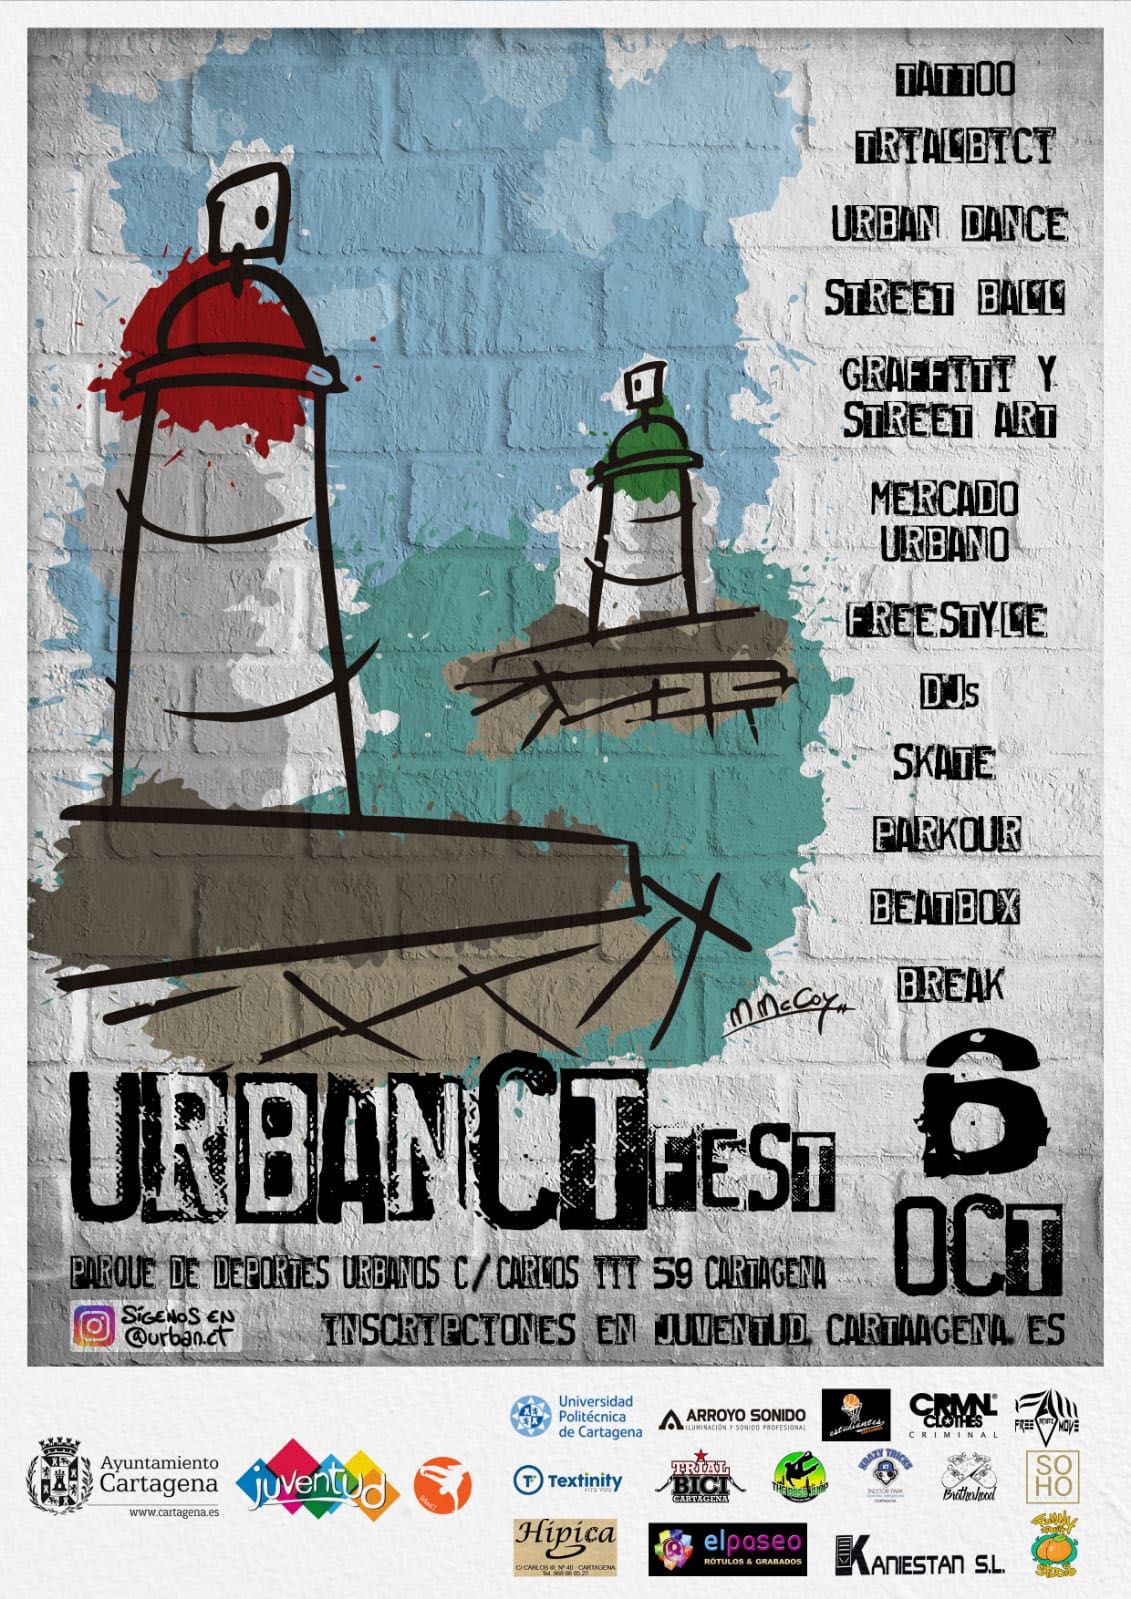 La Escuela Del Club Trial Bici Cartagena En El Próximo UrbanCT Fest El 6 De Octubre!!!